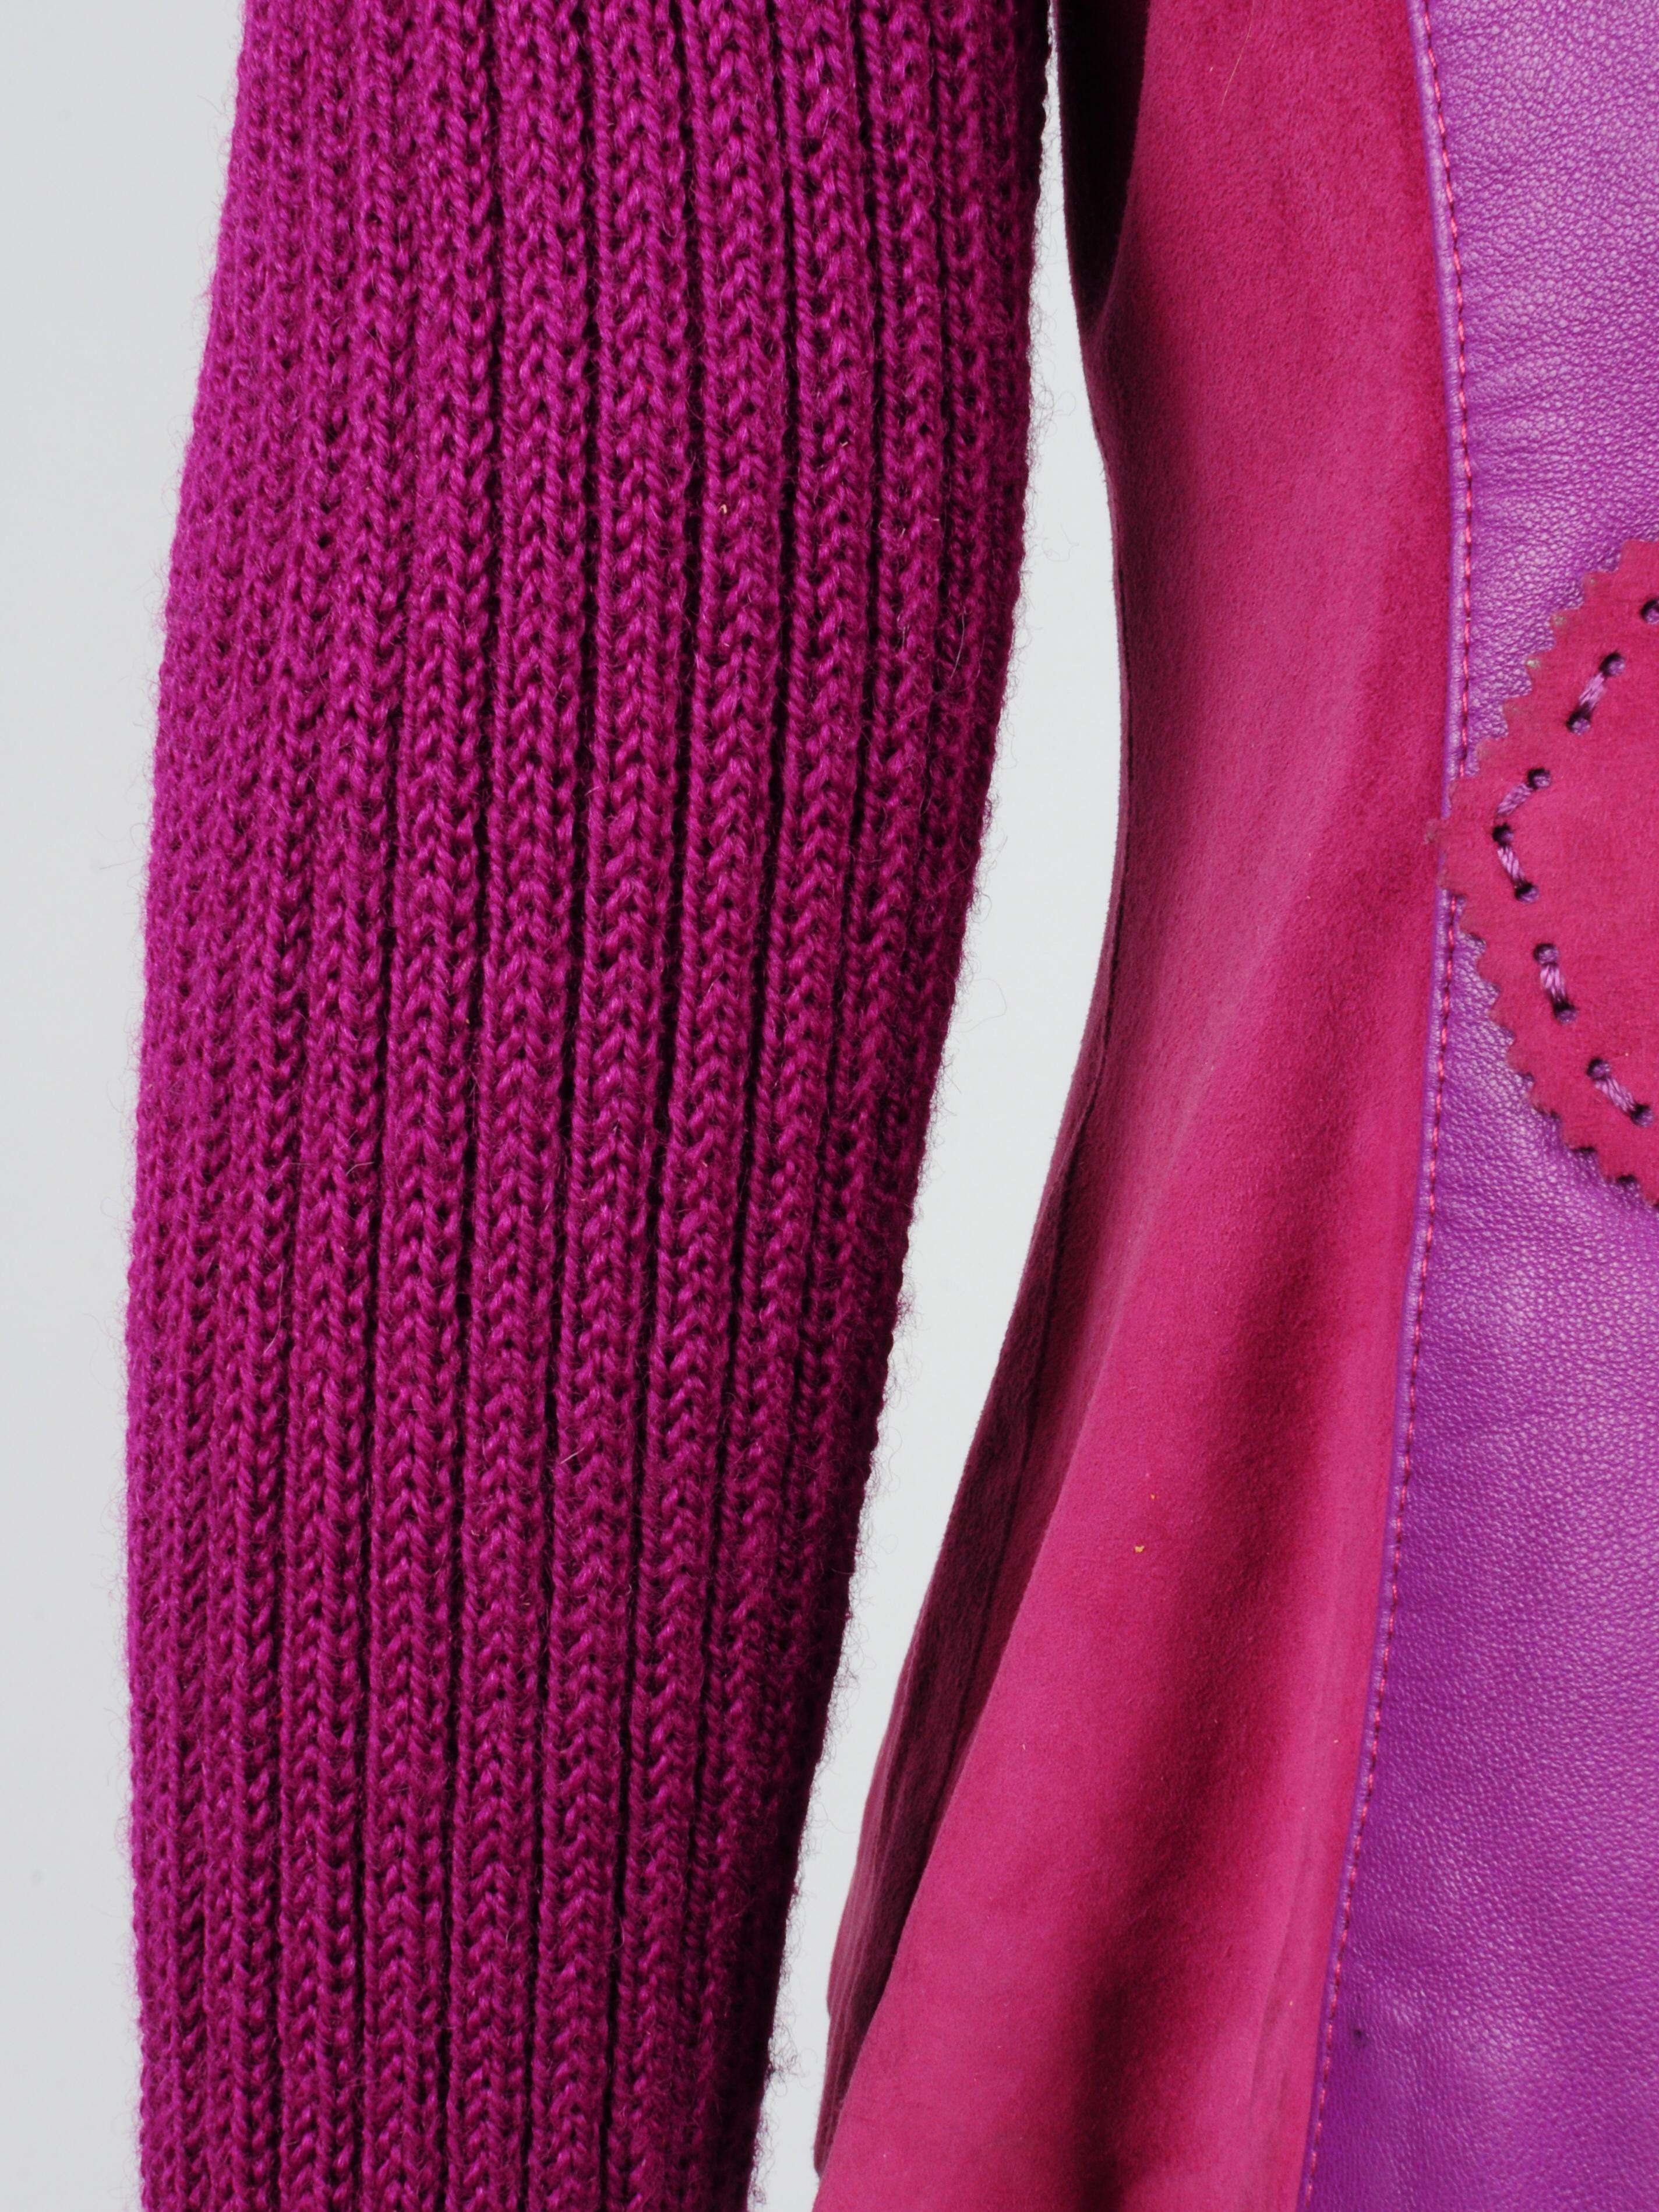 Elizabeth Wessel Monte Carlo Leather and Knitwear Purple Blazer 1980s For Sale 8